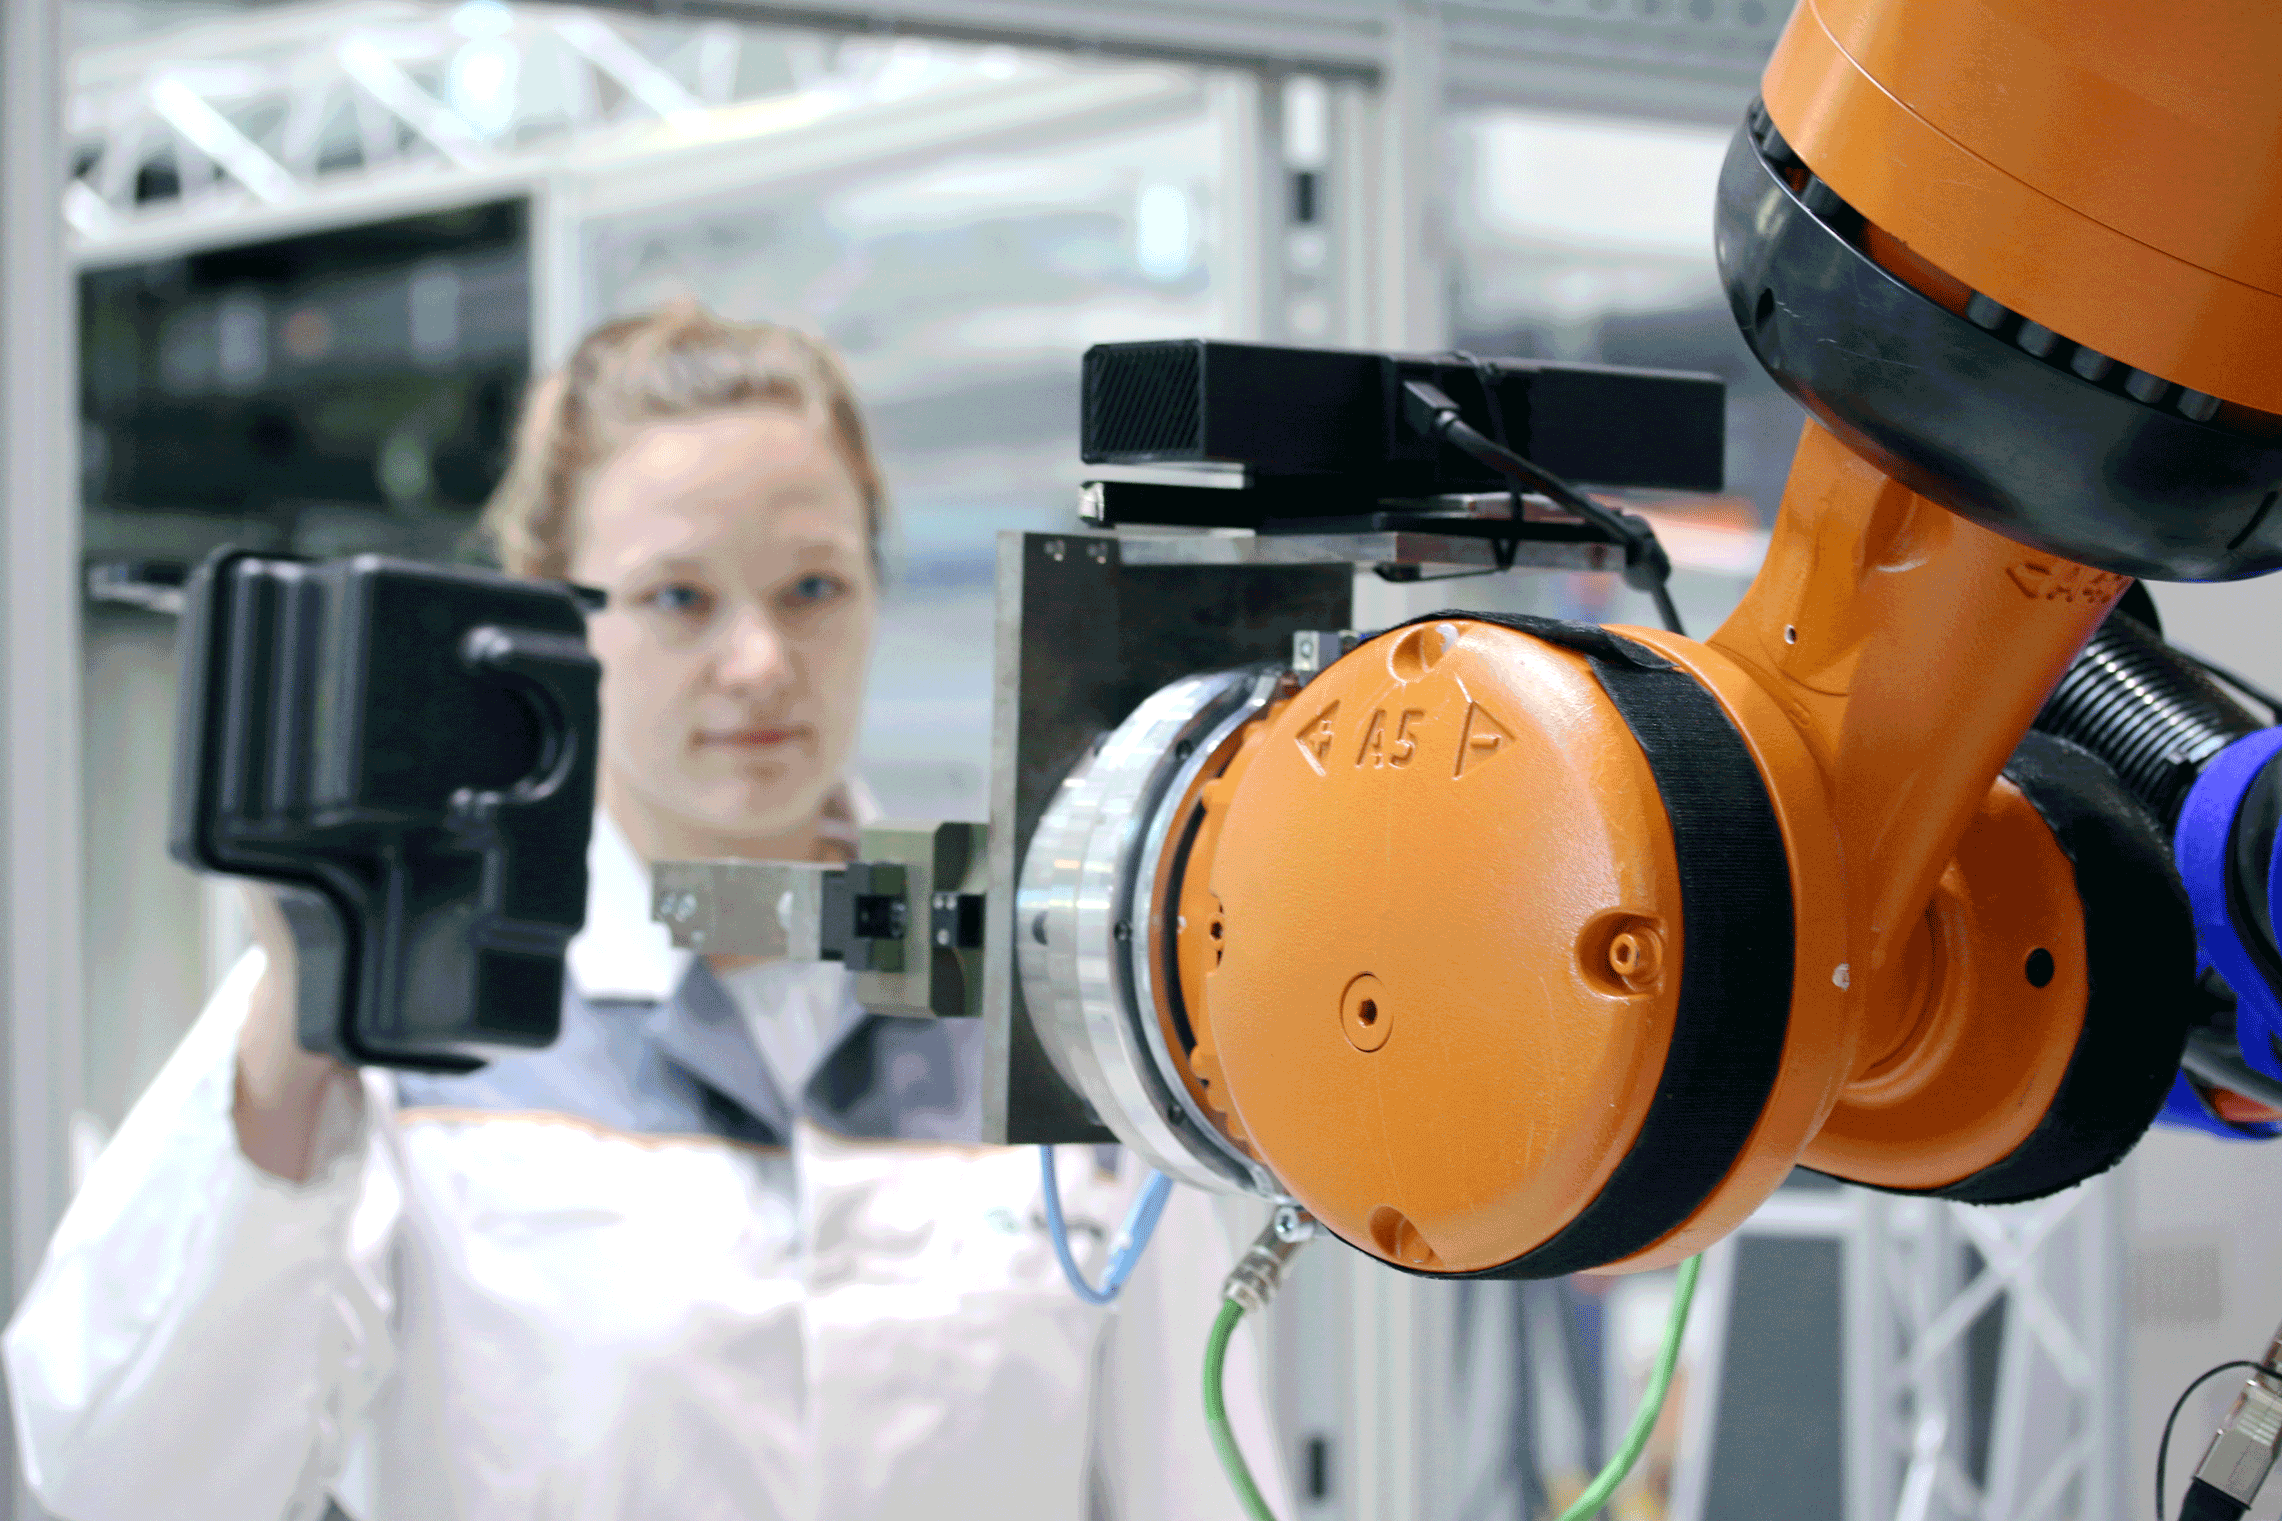 Der Roboter erkennt das Bauteil, das die Mitarbeiterin hält und folgt behutsam ihrer Hand bis zur Übergabe des Werkstücks.